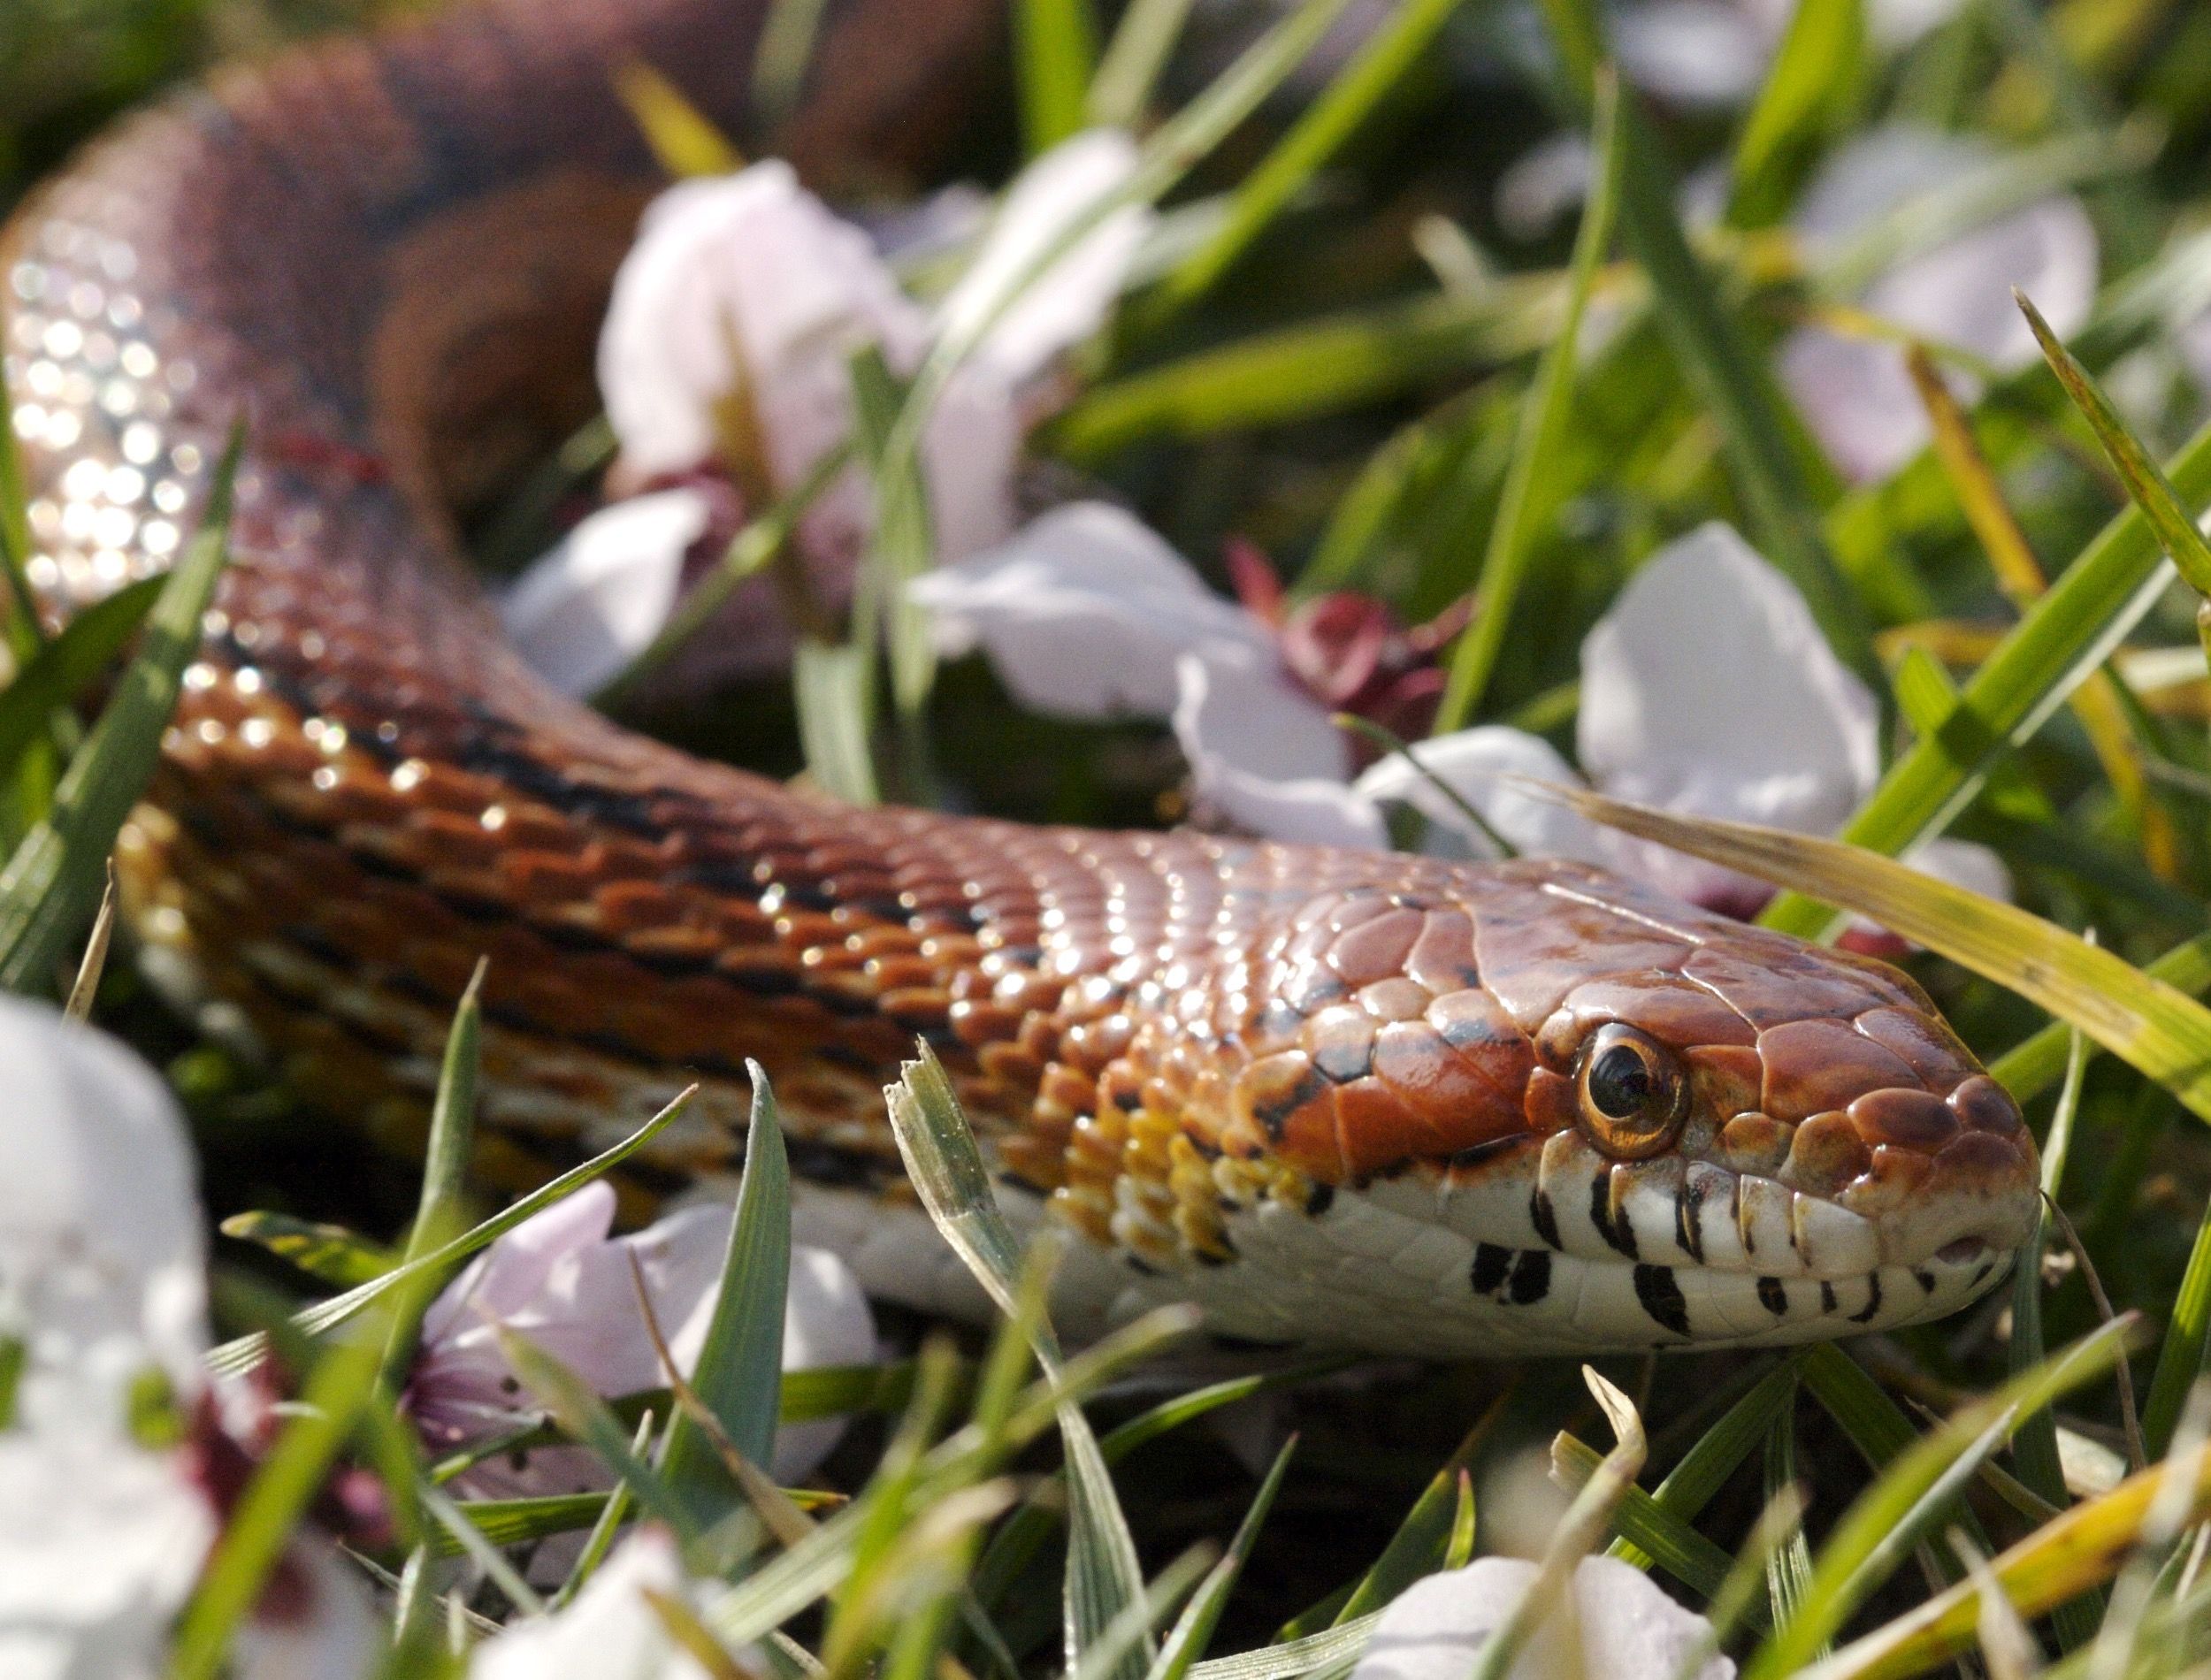 Snake in Garden Among Flowers